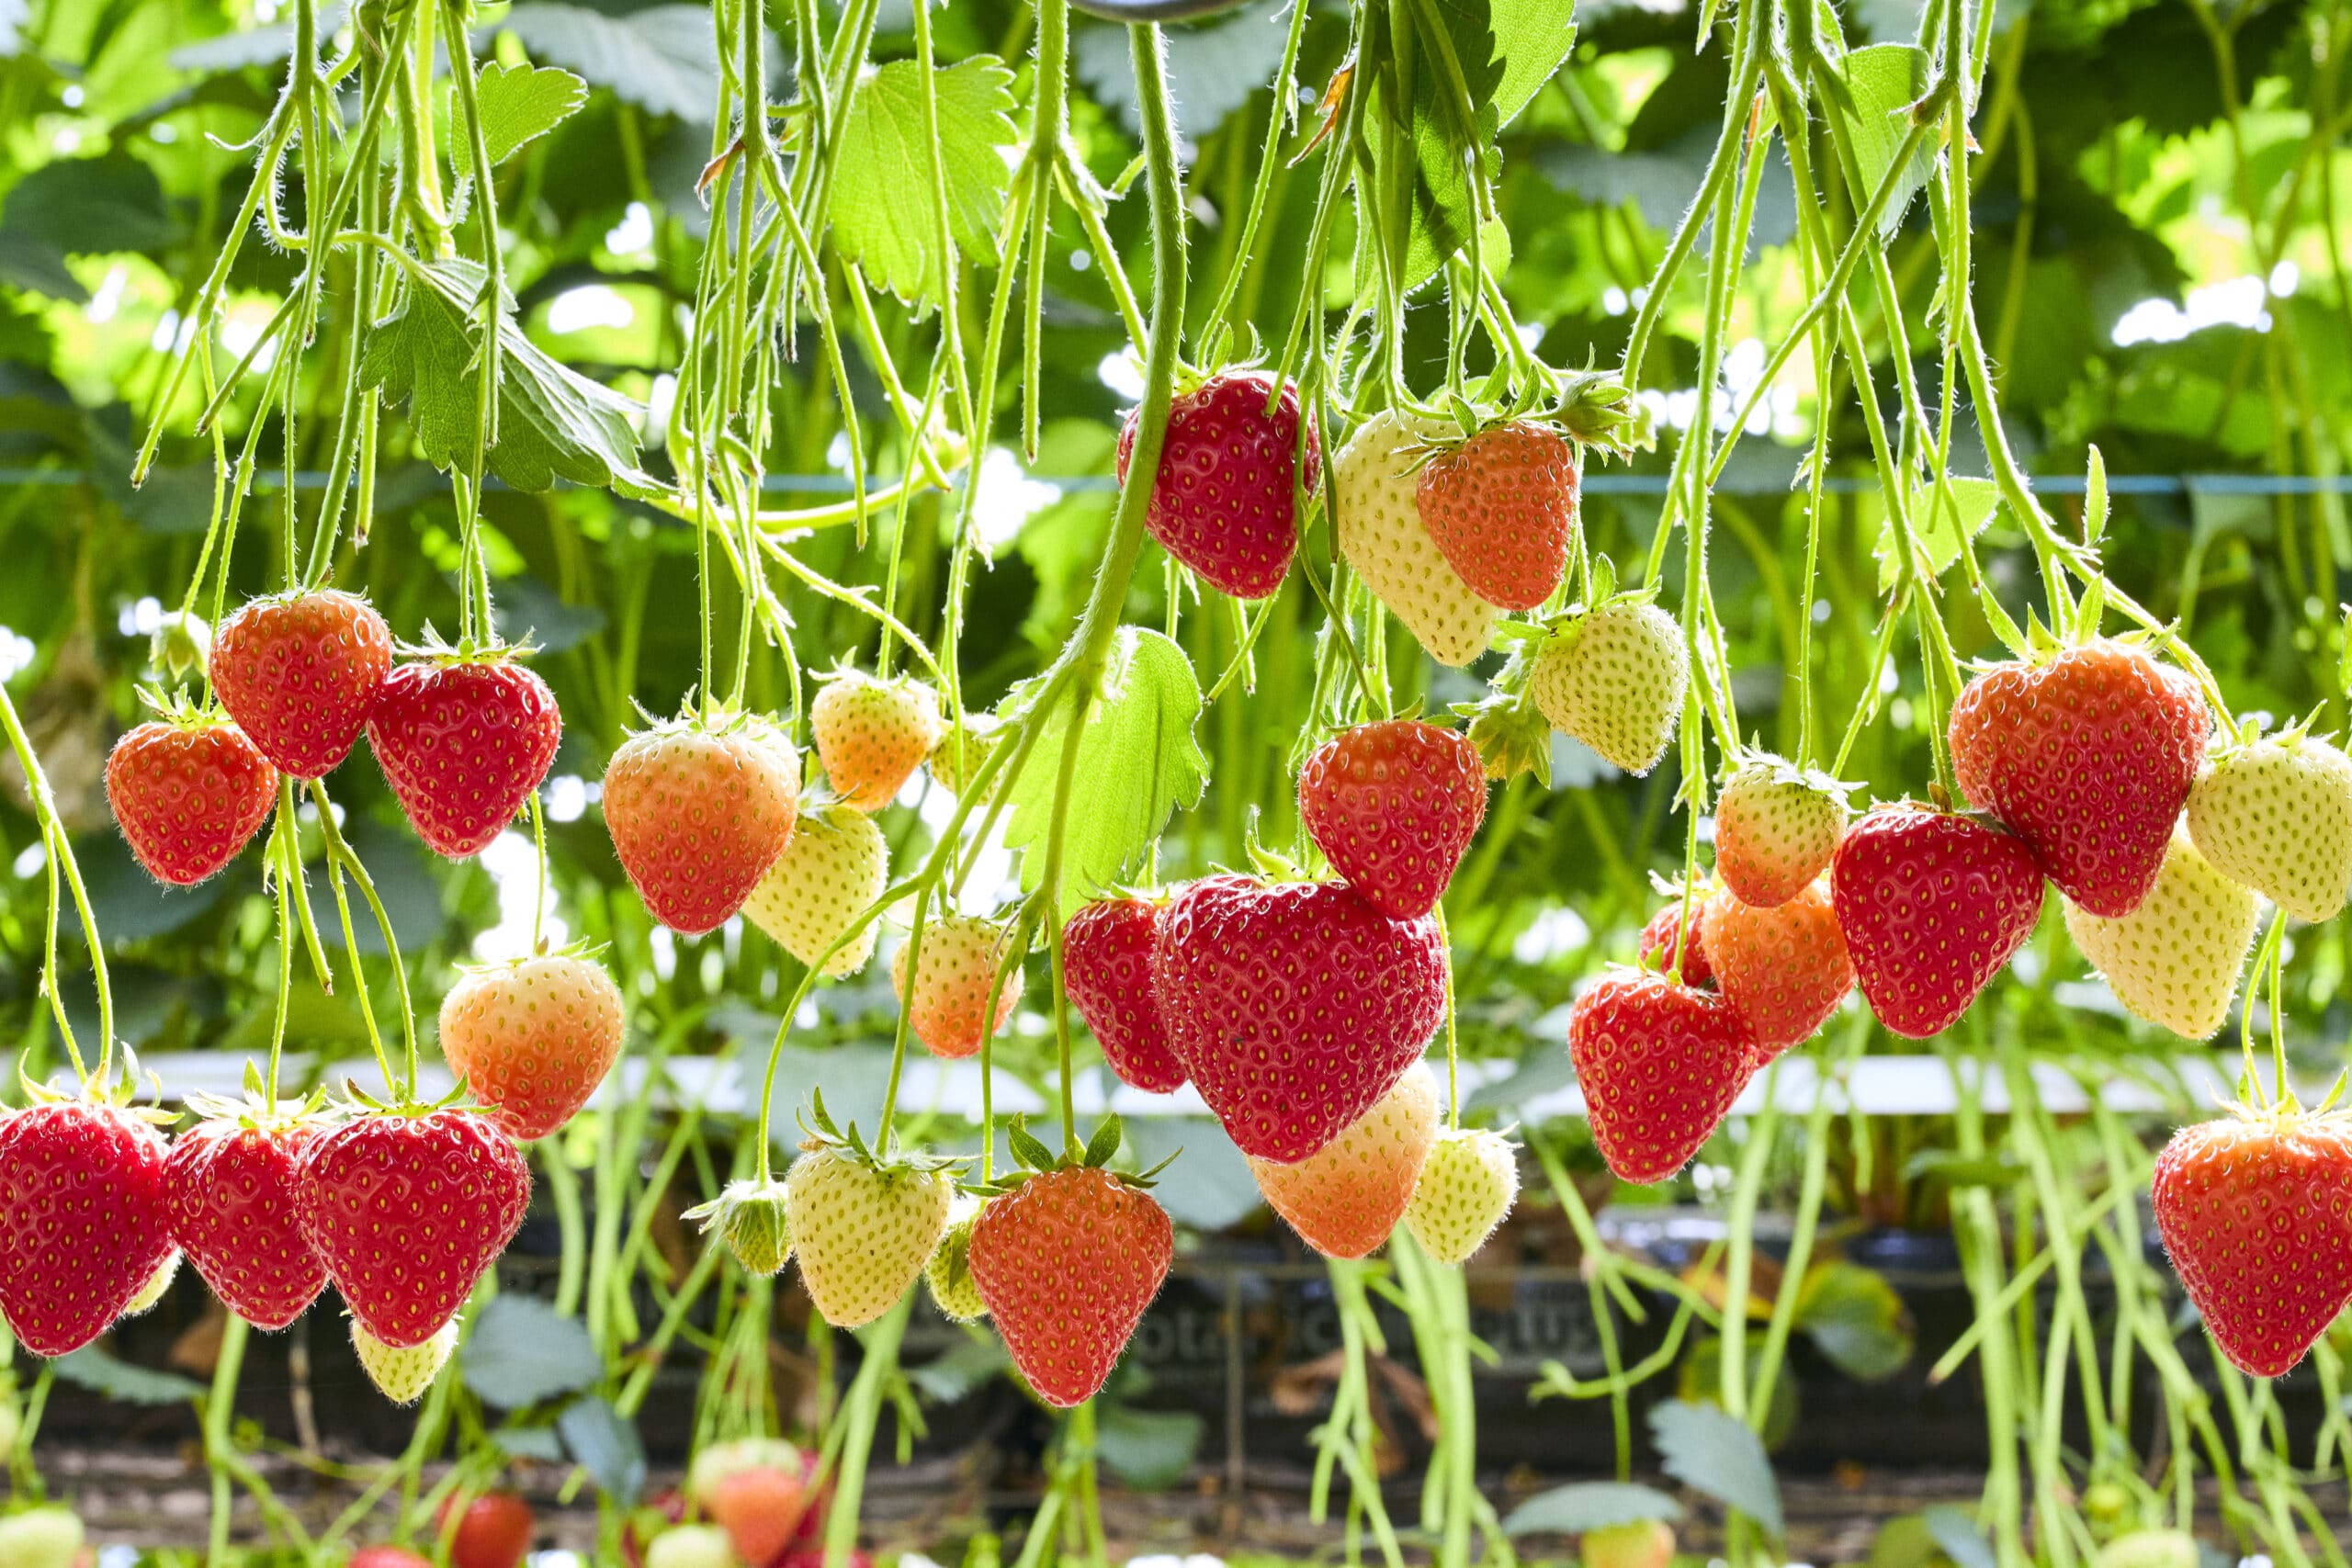 TSBC to offer year-round supply of British strawberries